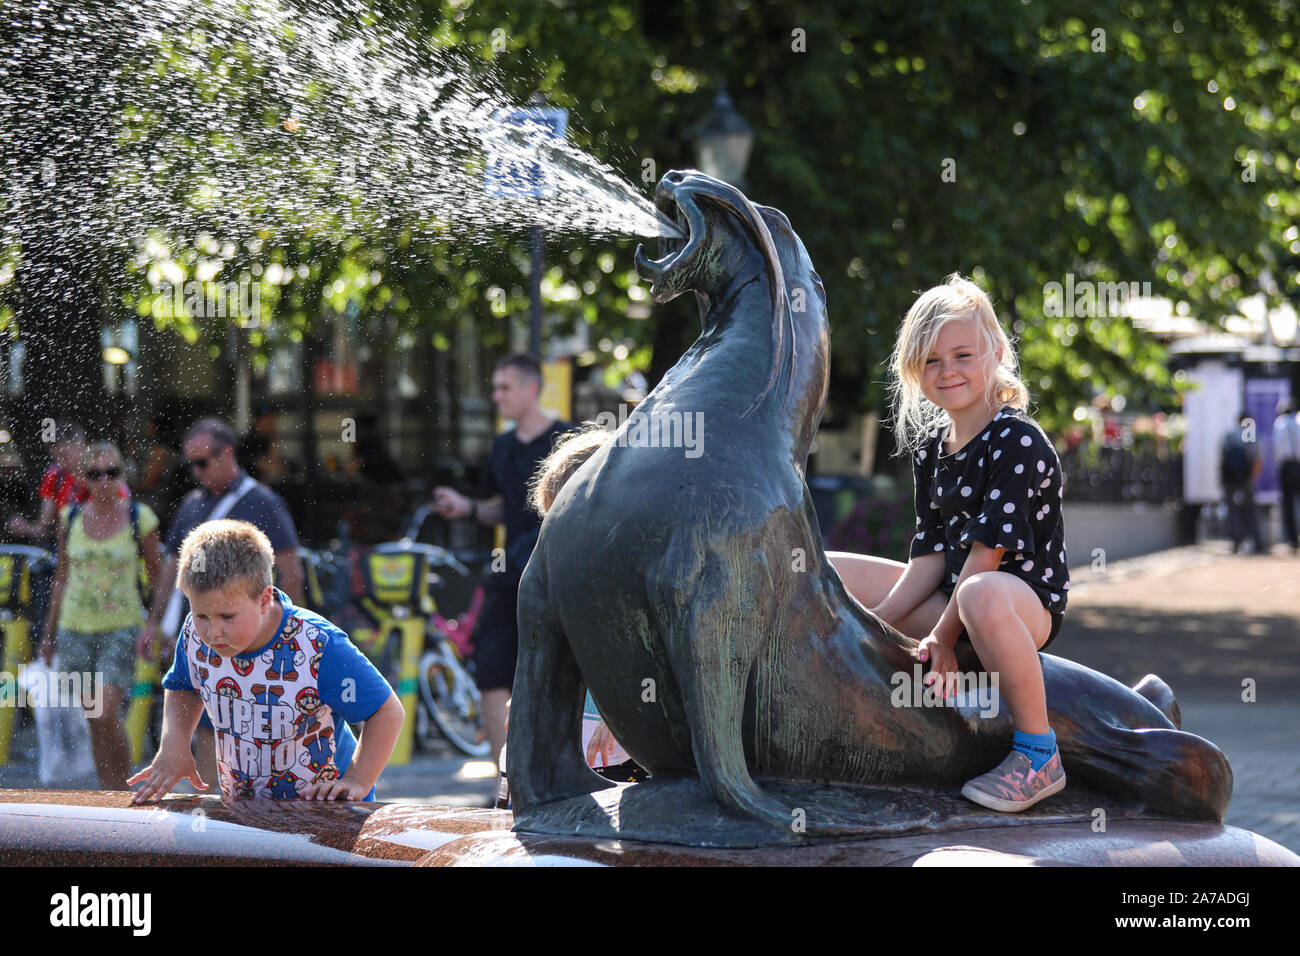 Jeune fille assise sur un jet d'eau de mer lion statue Havis Amanda à Helsinki, Finlande Banque D'Images